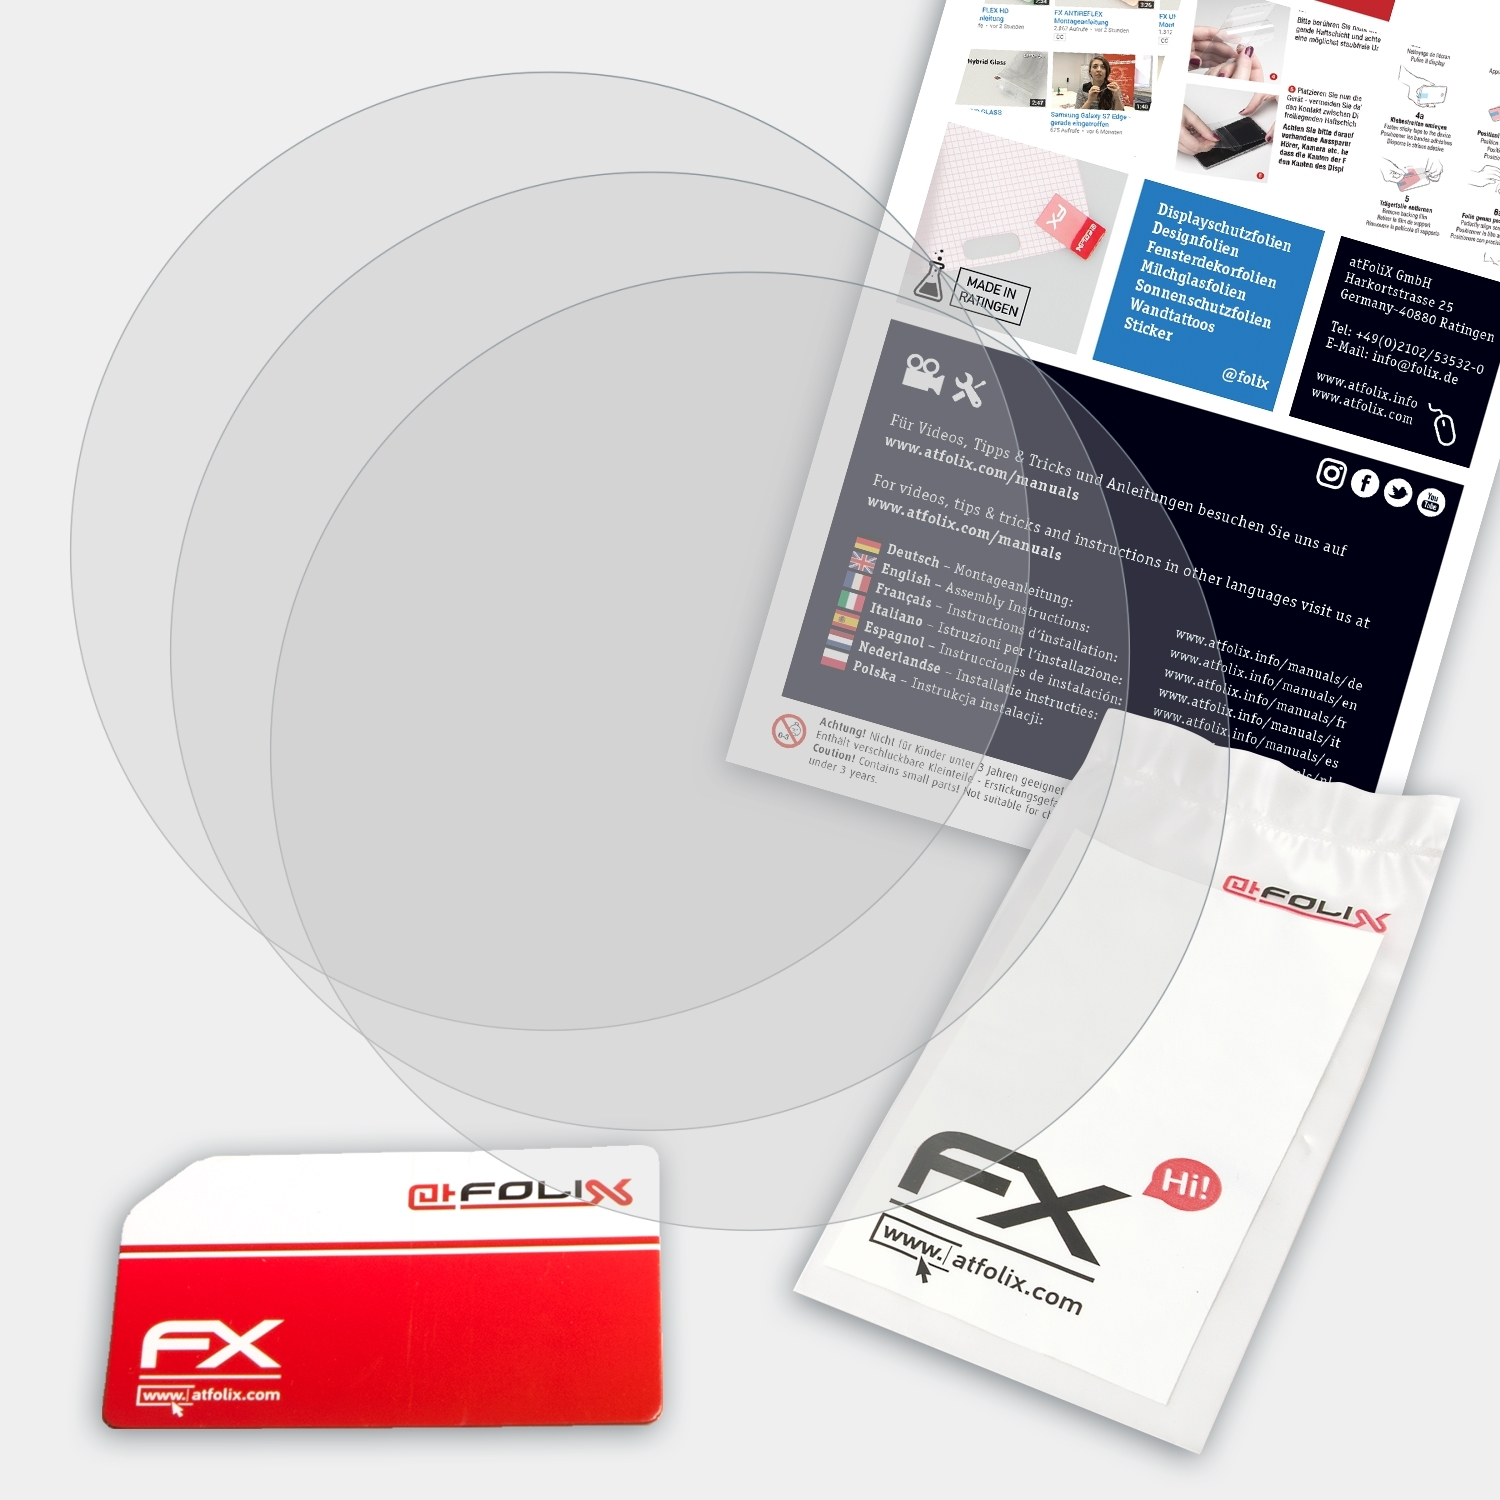 ATFOLIX 3x 745) Forerunner Garmin FX-Antireflex Displayschutz(für